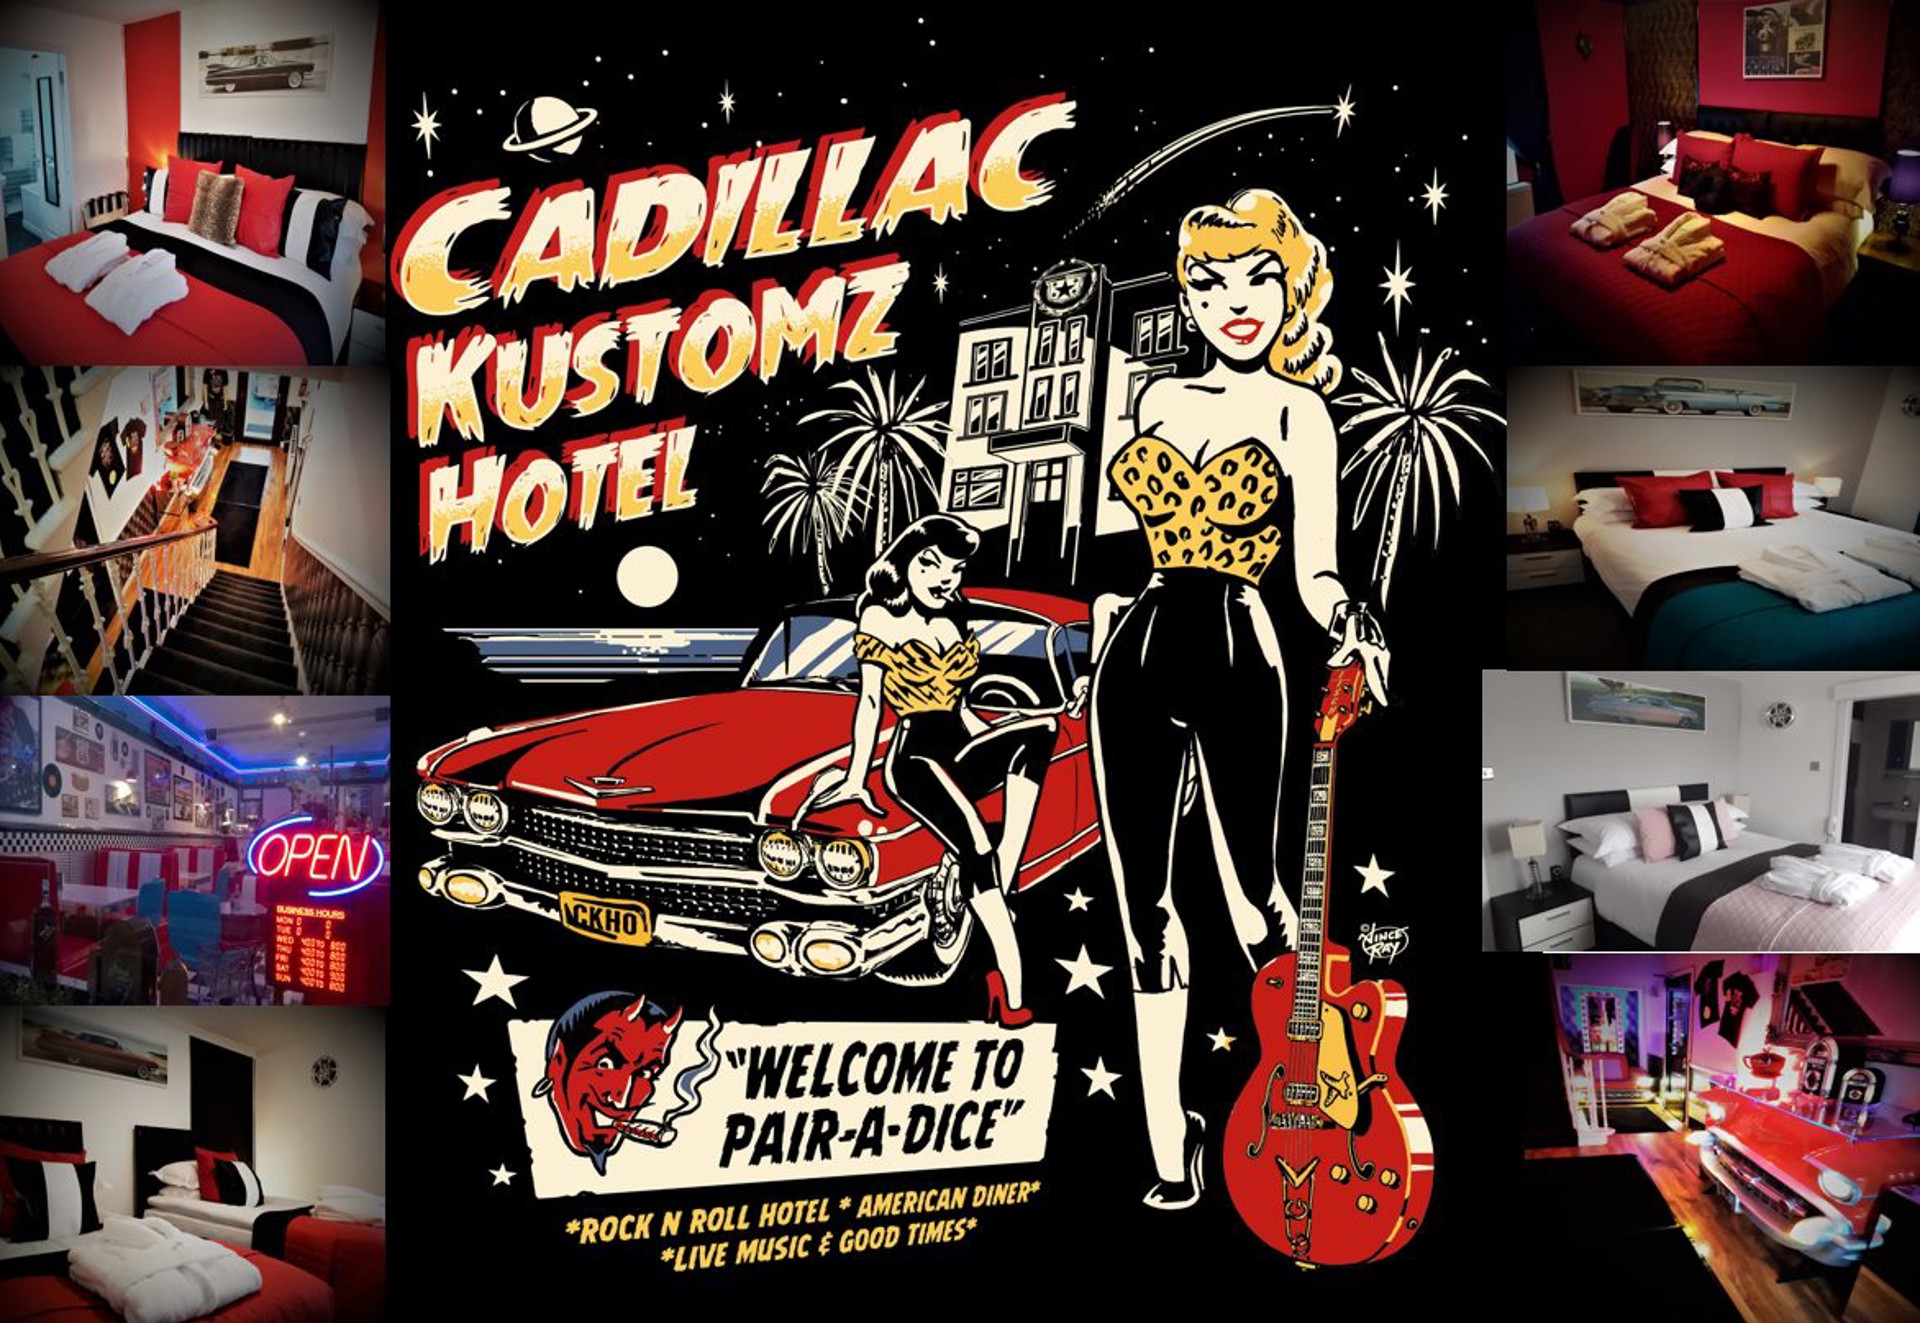 Background image - Cadillac Kustomz Hotel